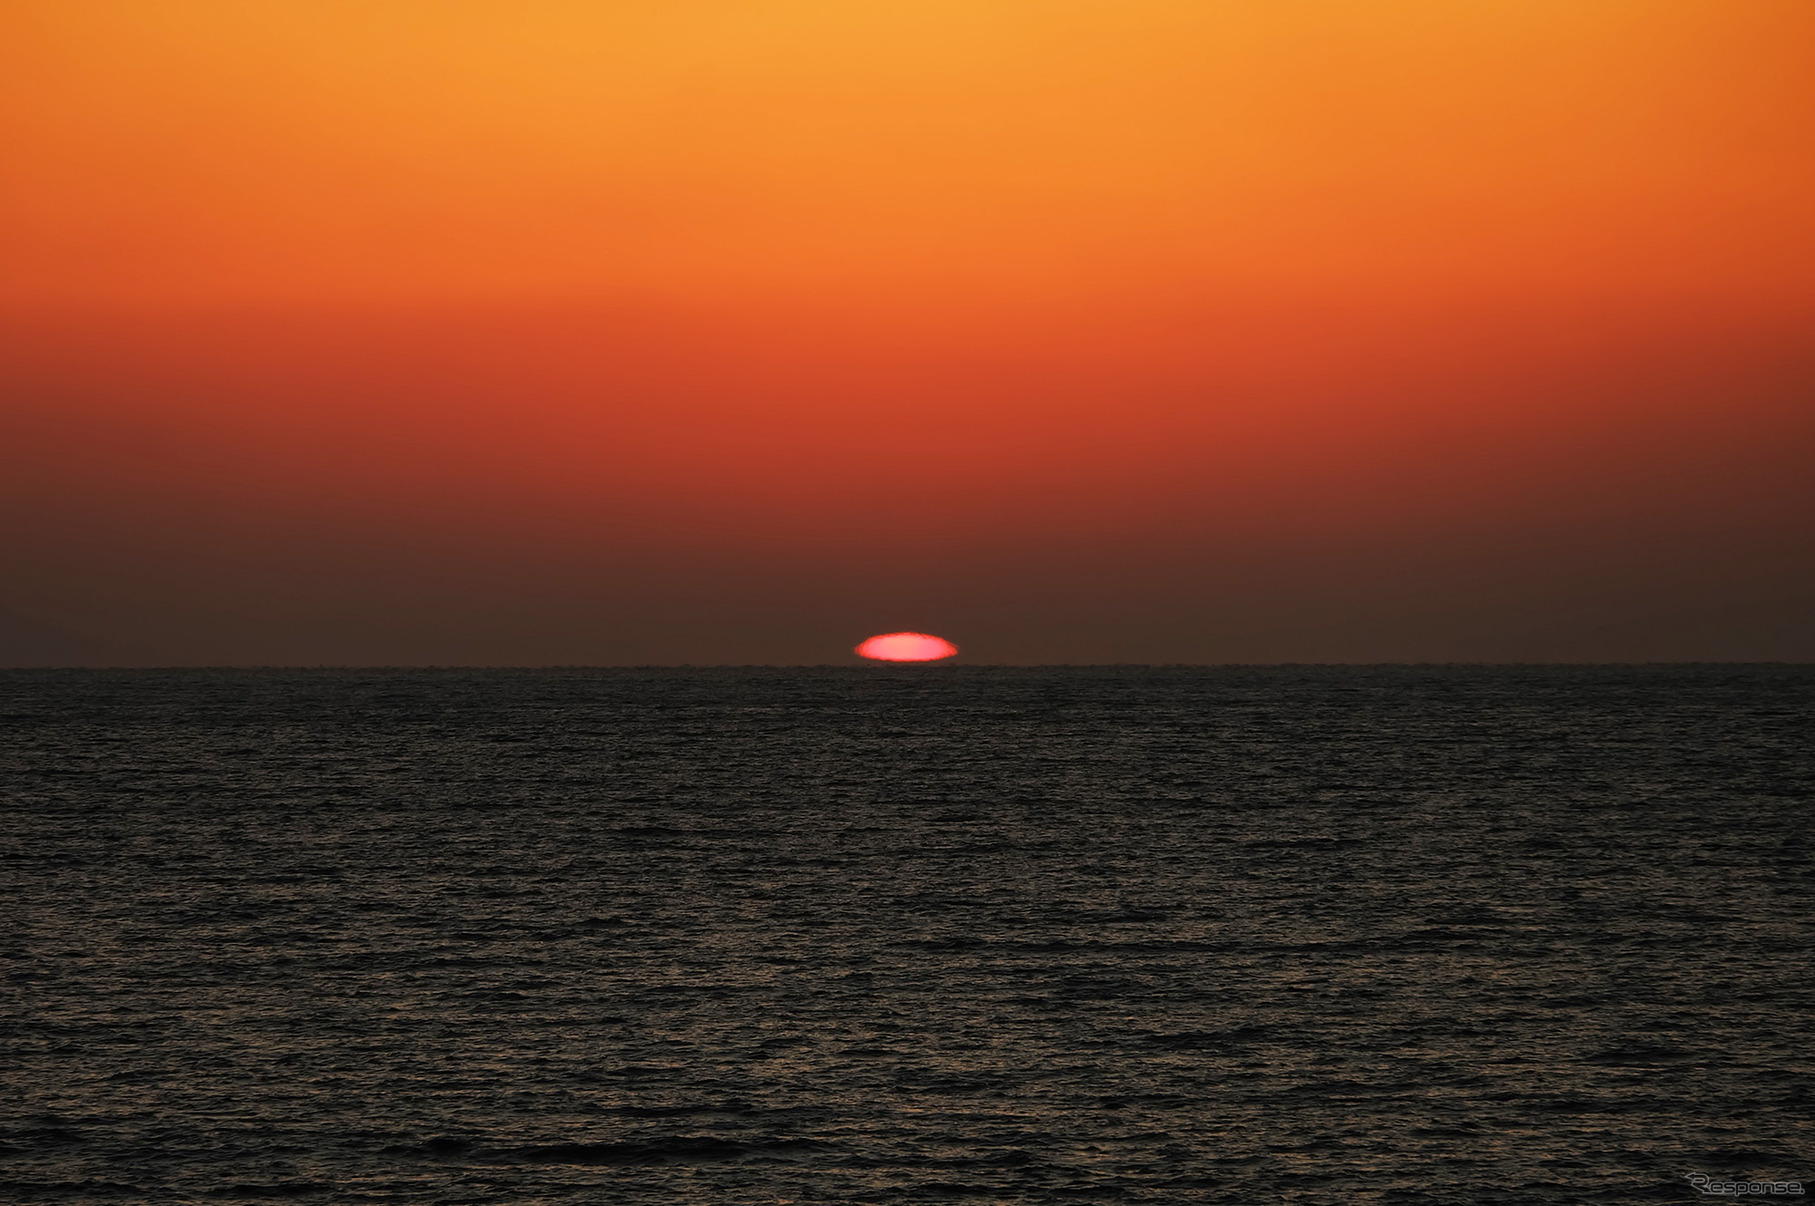 日没終了直前。水平線から浮いているように見える。